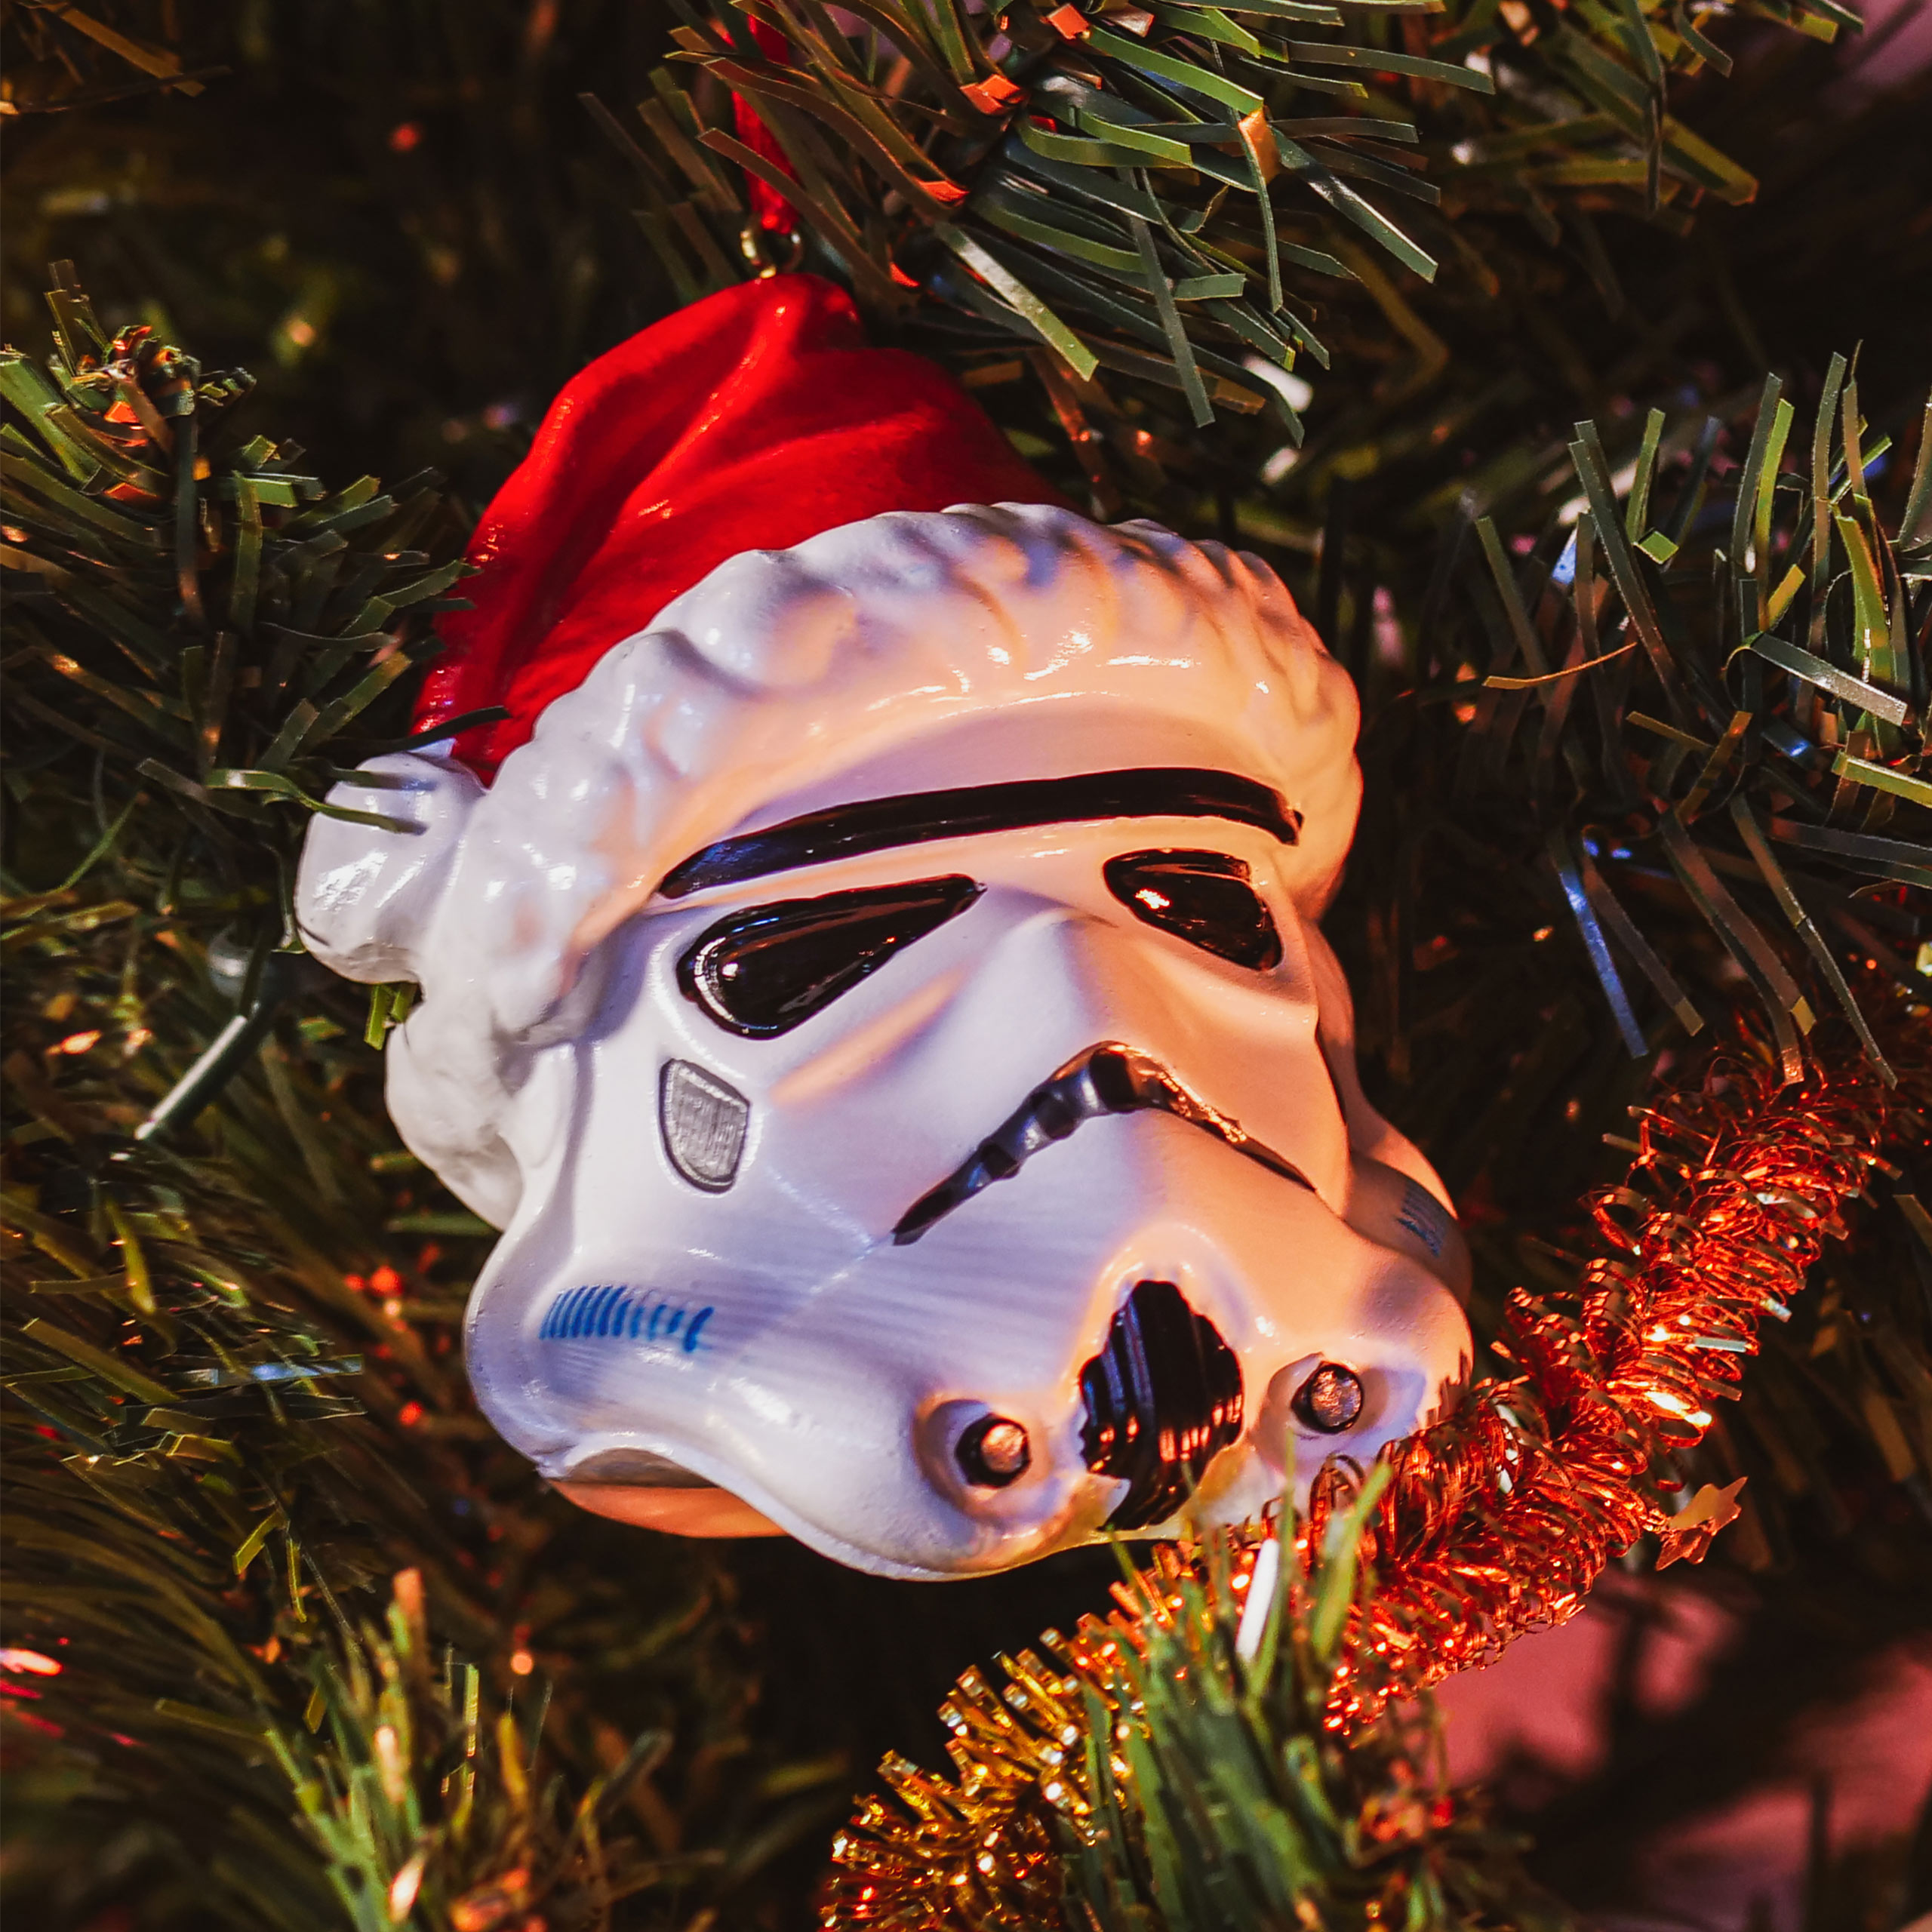 Stormtrooper Santa Weihnachtsbaum-Schmuck - Star Wars